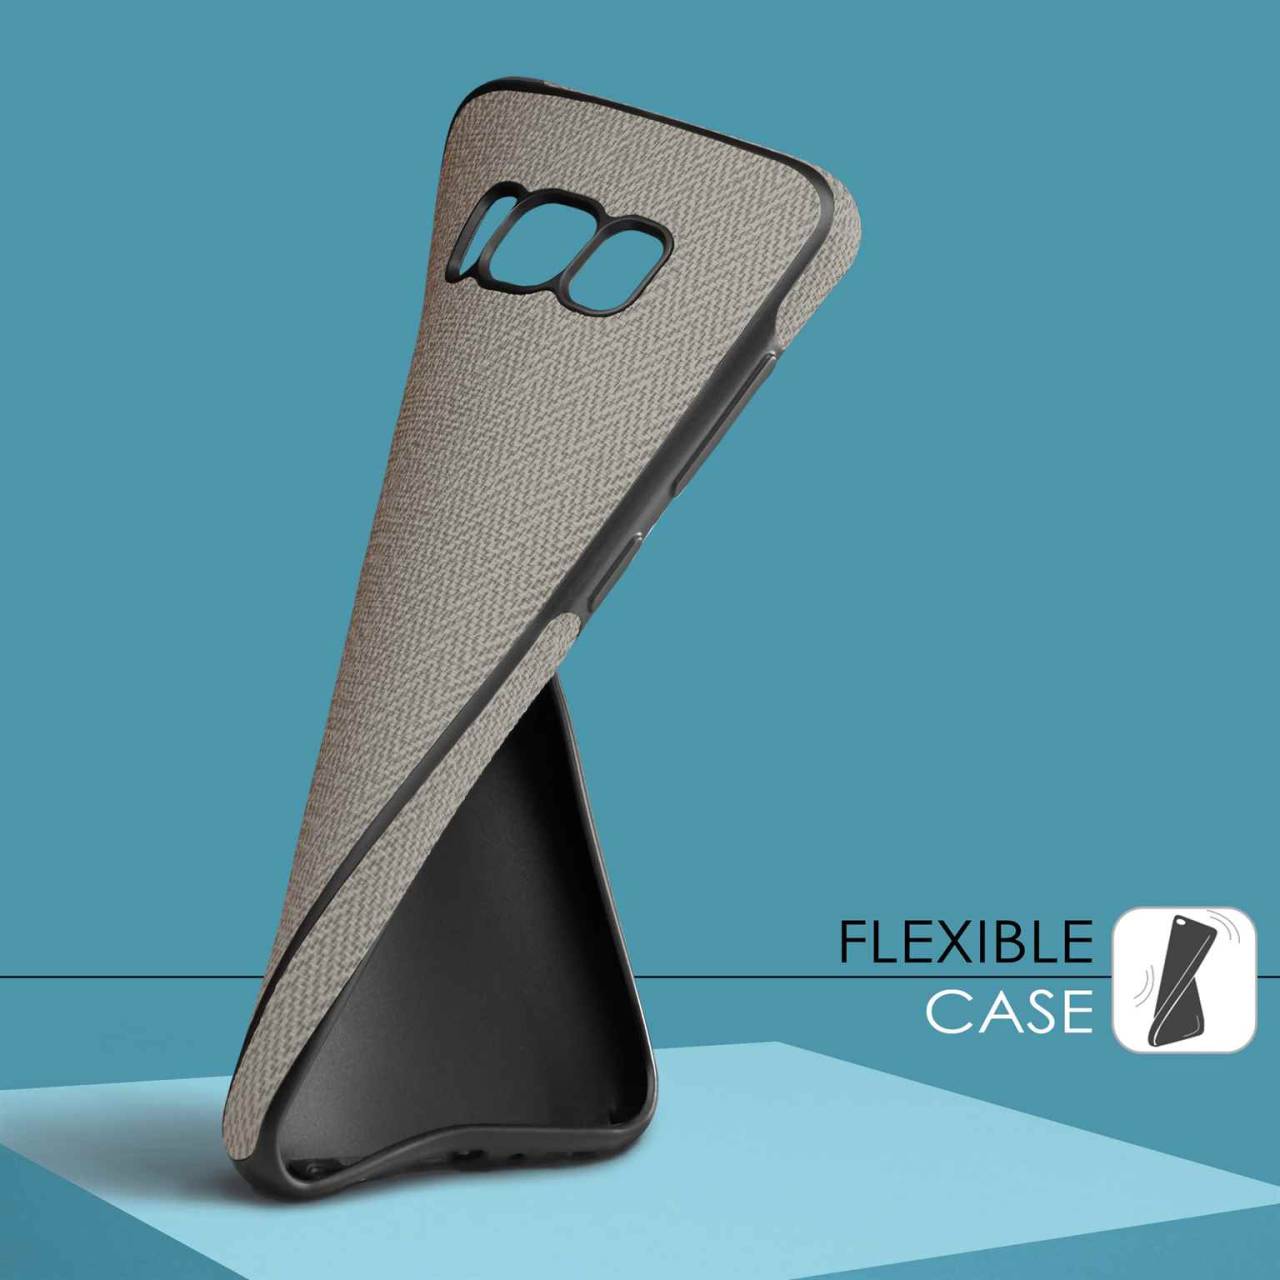 moex Chevron Case für Samsung Galaxy S5 – Flexible Hülle mit erhöhtem Rand für optimalen Schutz